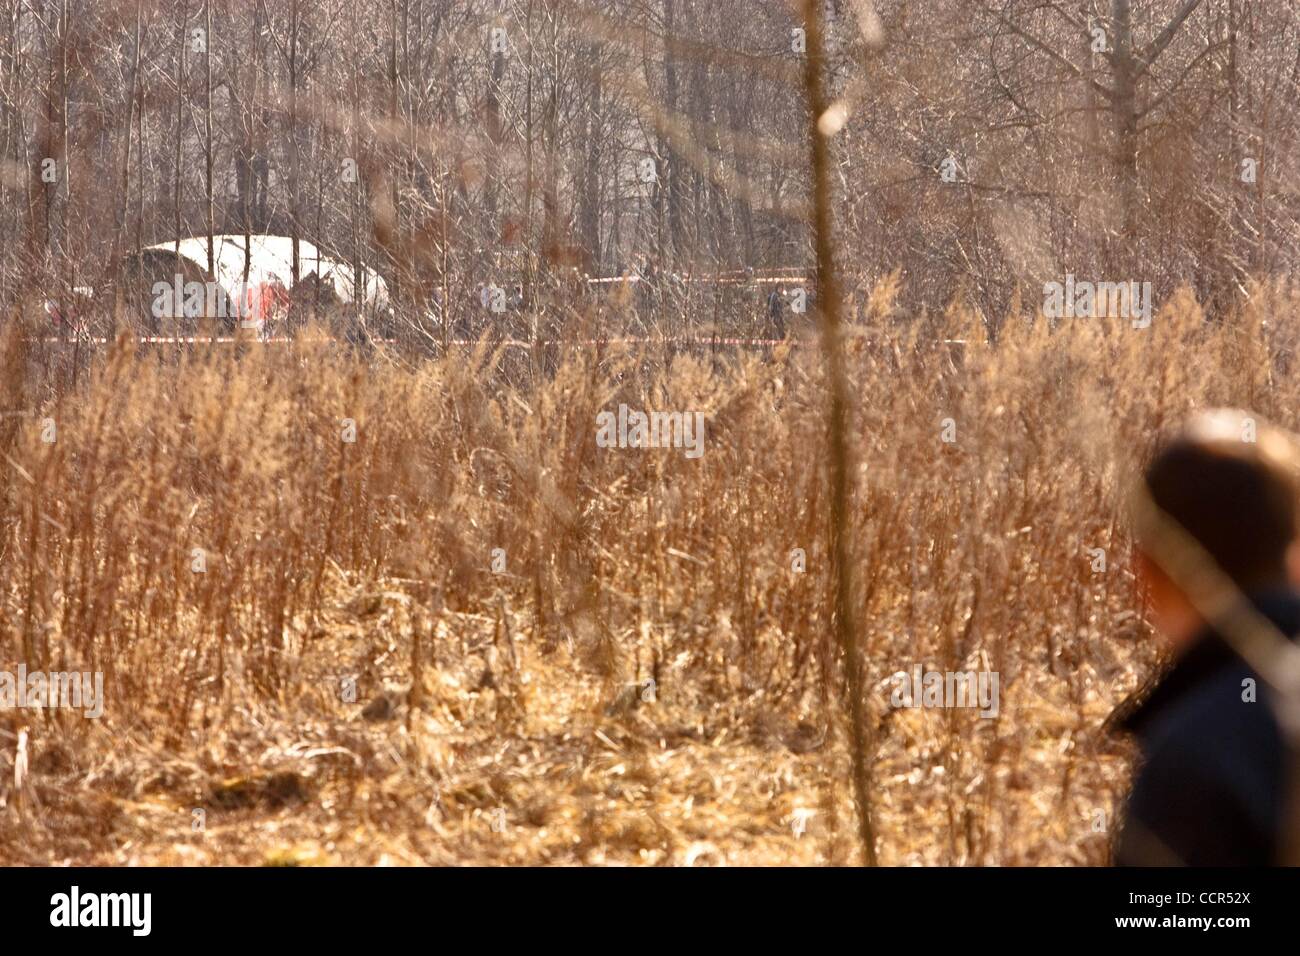 Apr 10, 2010 - Smolensk, Russie - La Police bloquer l'accident d'avion à l'aéroport militaire Severny où un fragment de l'avion a atterri TU-154 s'est écrasé. Un avion transportant le président polonais Kaczynski et des dizaines des plus grands leaders politiques et militaires au lieu d'un massacre soviétique de Pol Banque D'Images